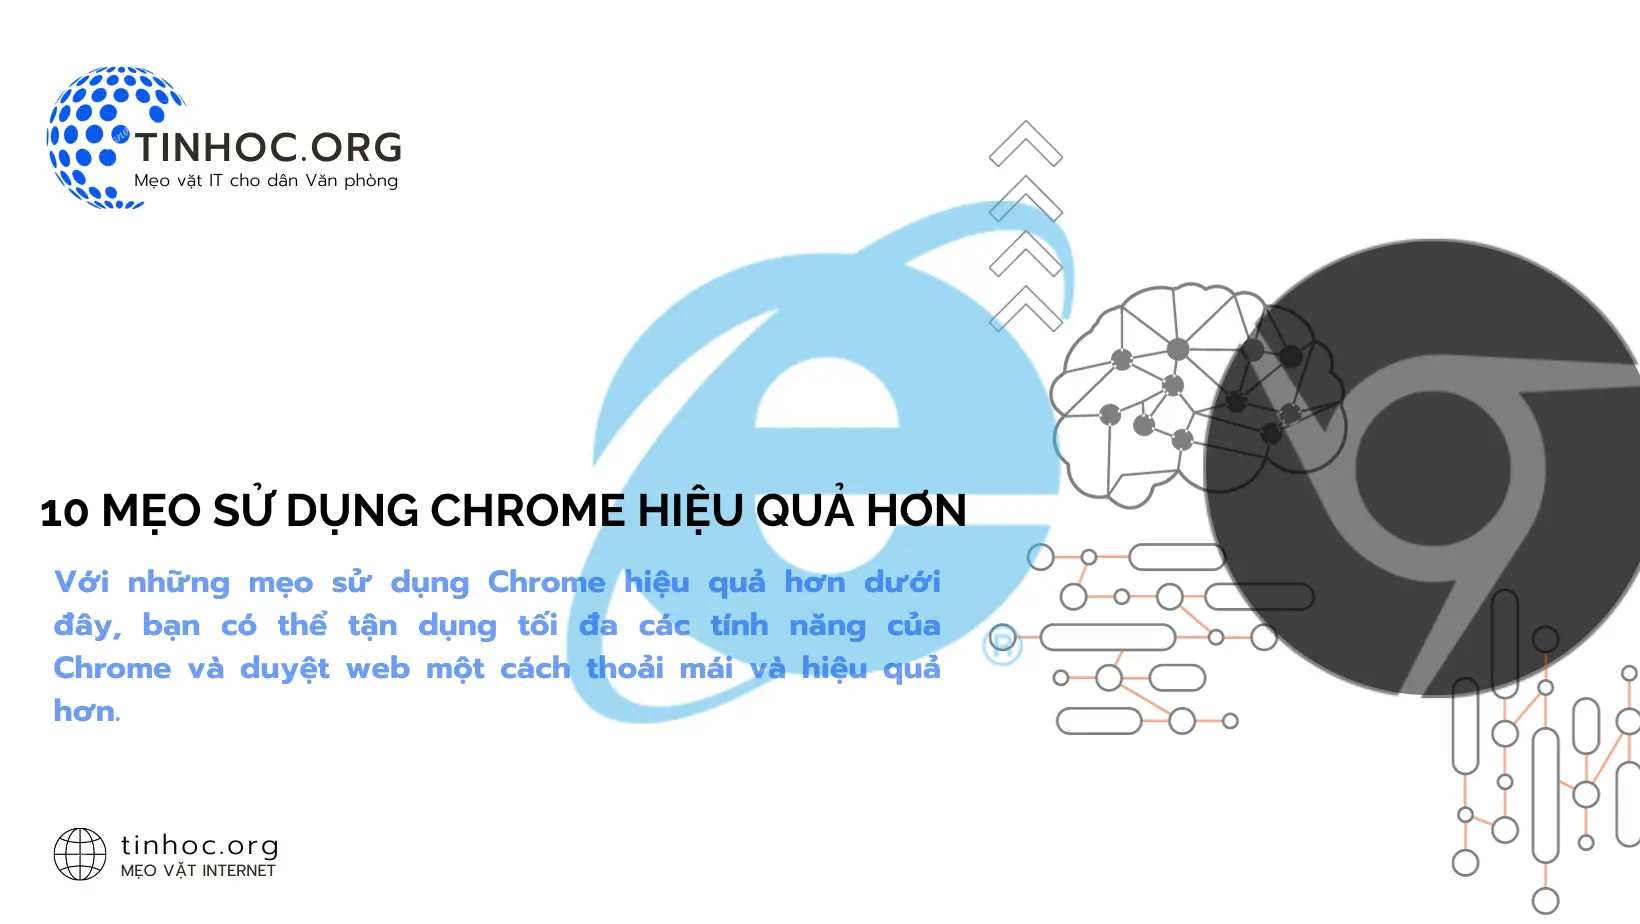 Với những mẹo sử dụng Chrome hiệu quả hơn dưới đây, bạn có thể tận dụng tối đa các tính năng của Chrome và duyệt web một cách thoải mái và hiệu quả hơn.